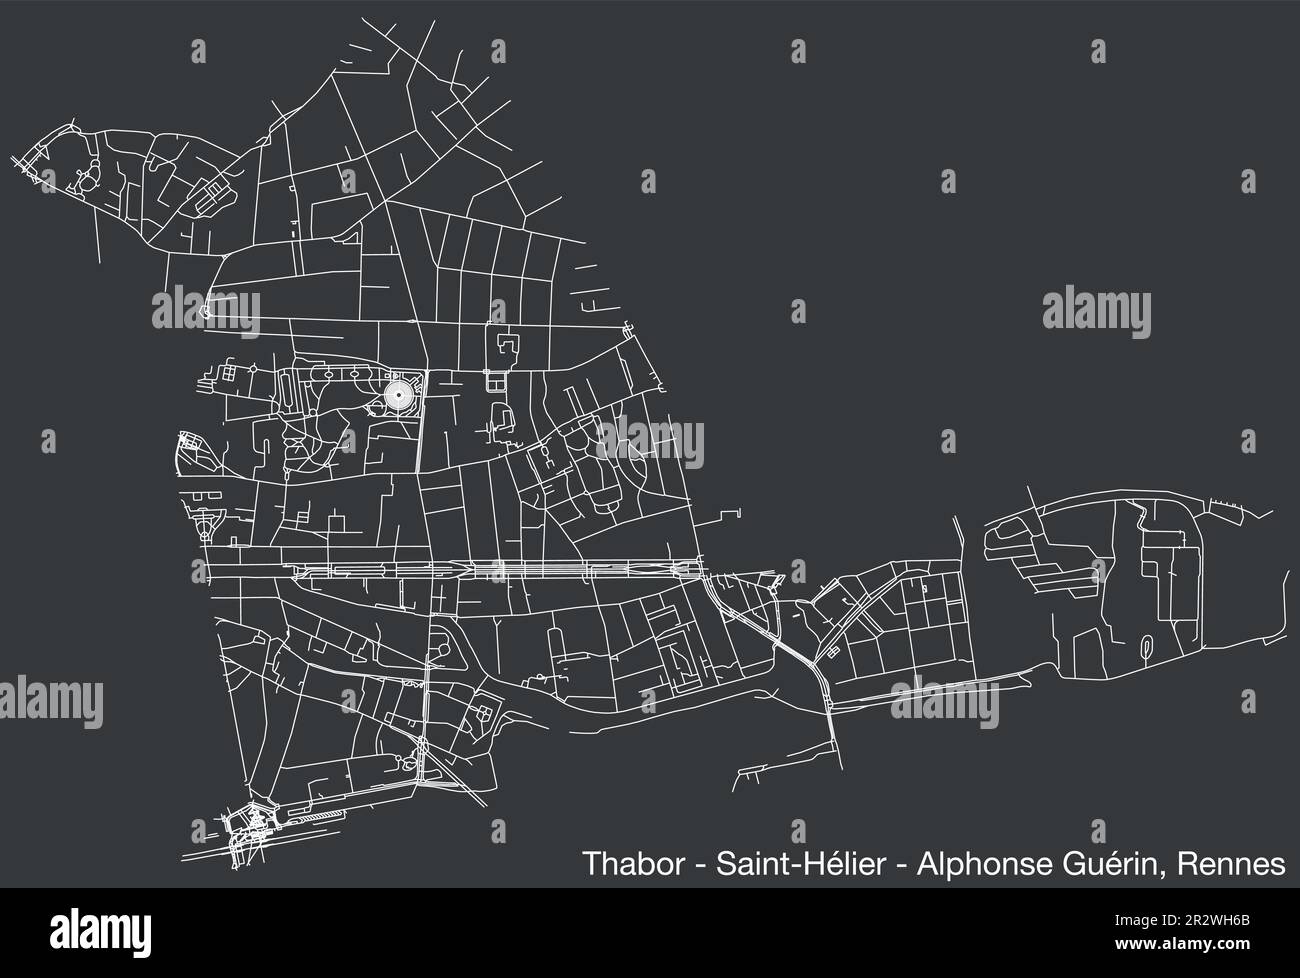 Straßenkarte von THABOR - SAINT-HÉLIER - ALPHONSE GUÉRIN VIERTEL, RENNES Stock Vektor